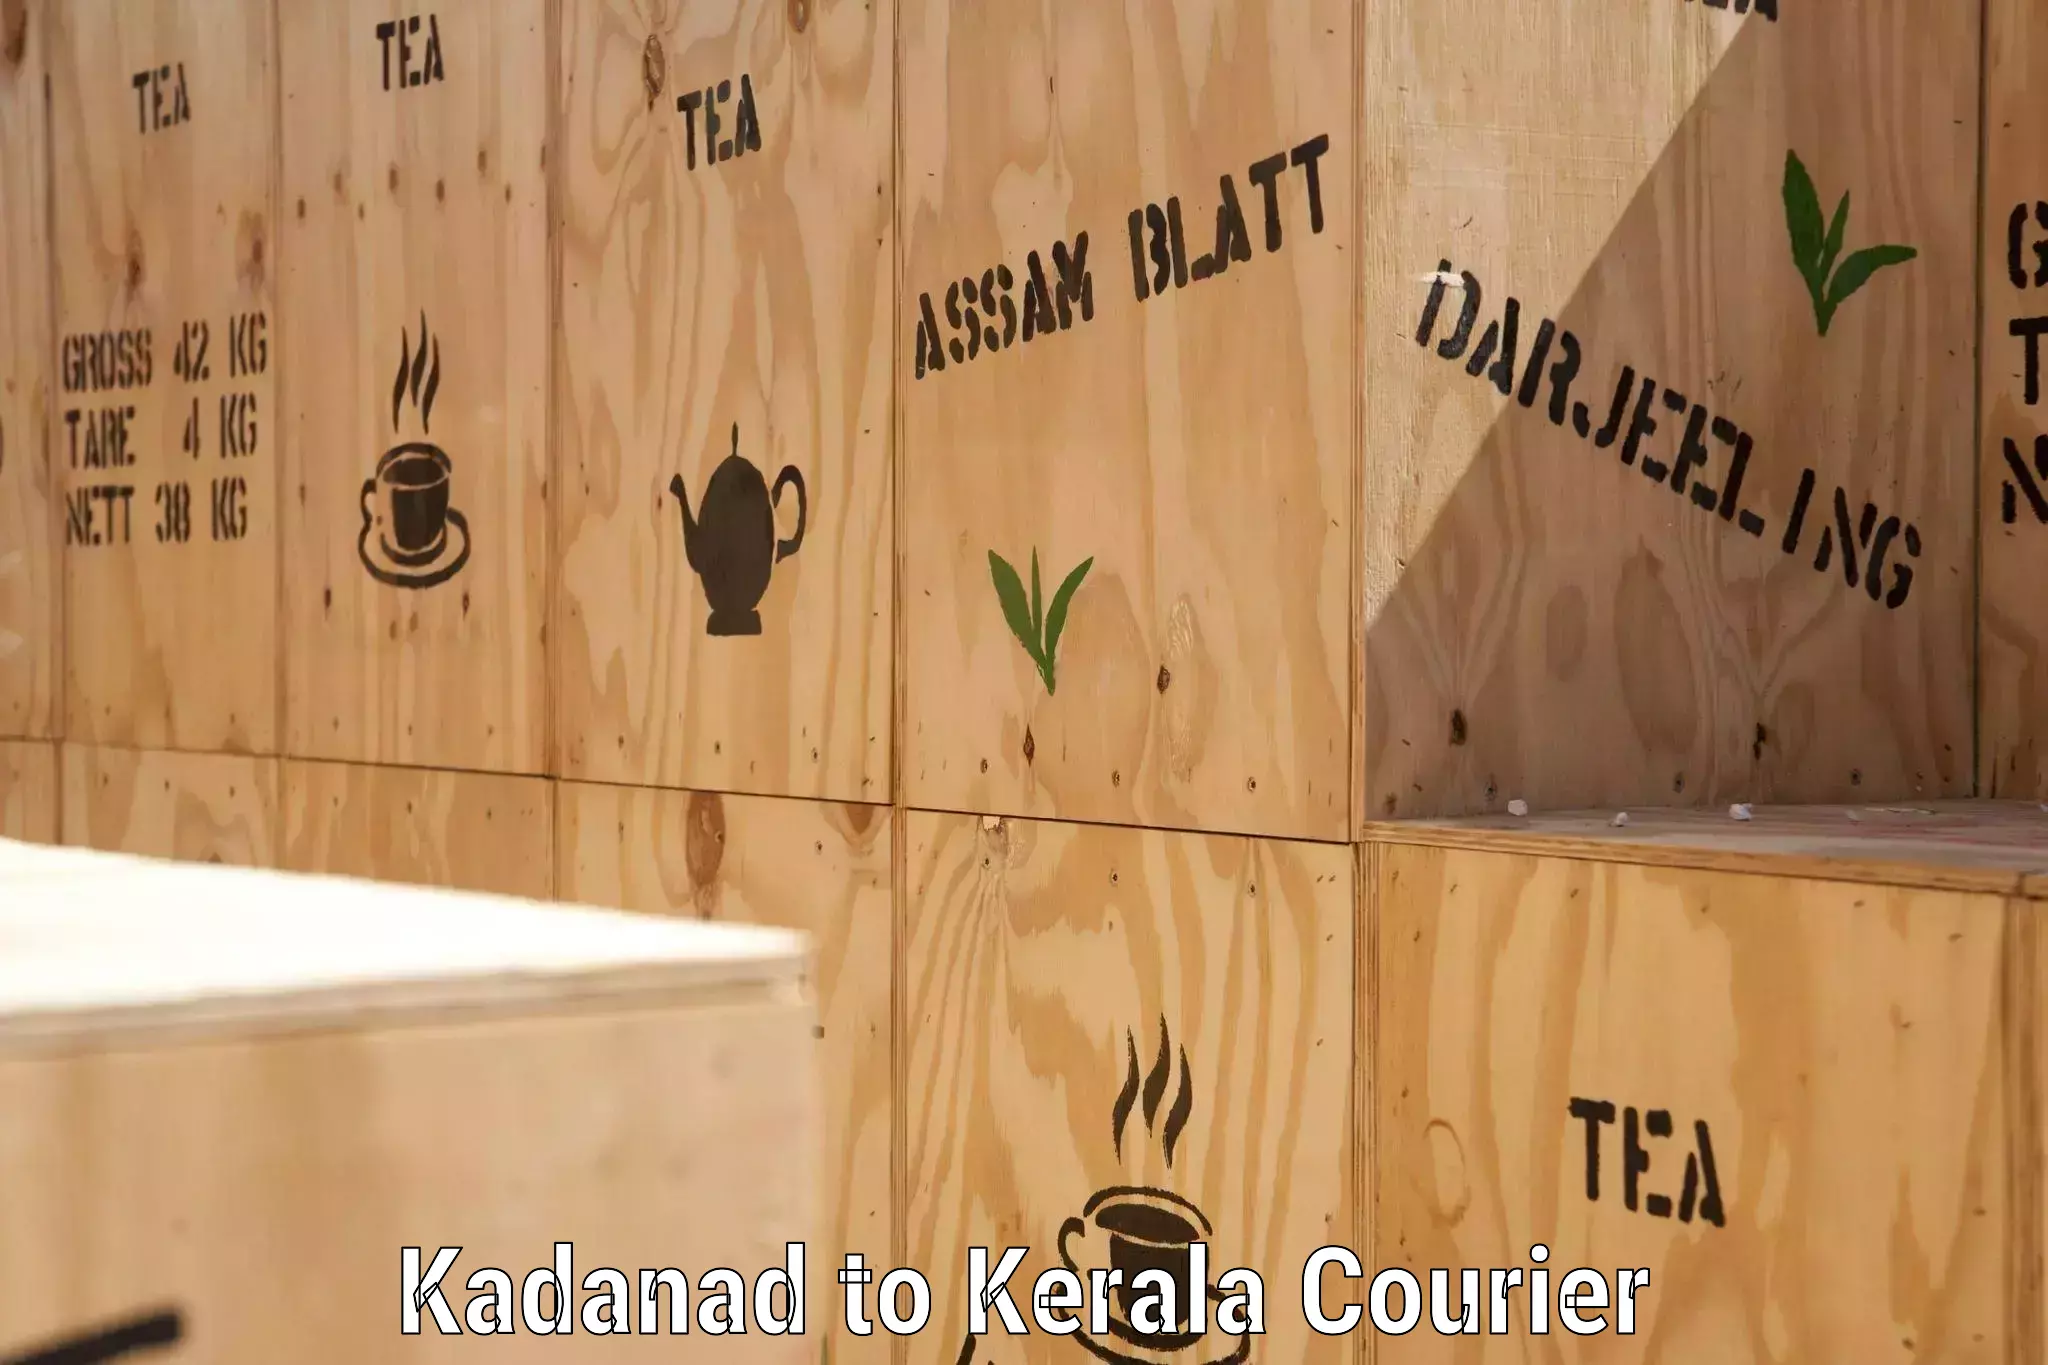 Urban courier service Kadanad to Kanhangad